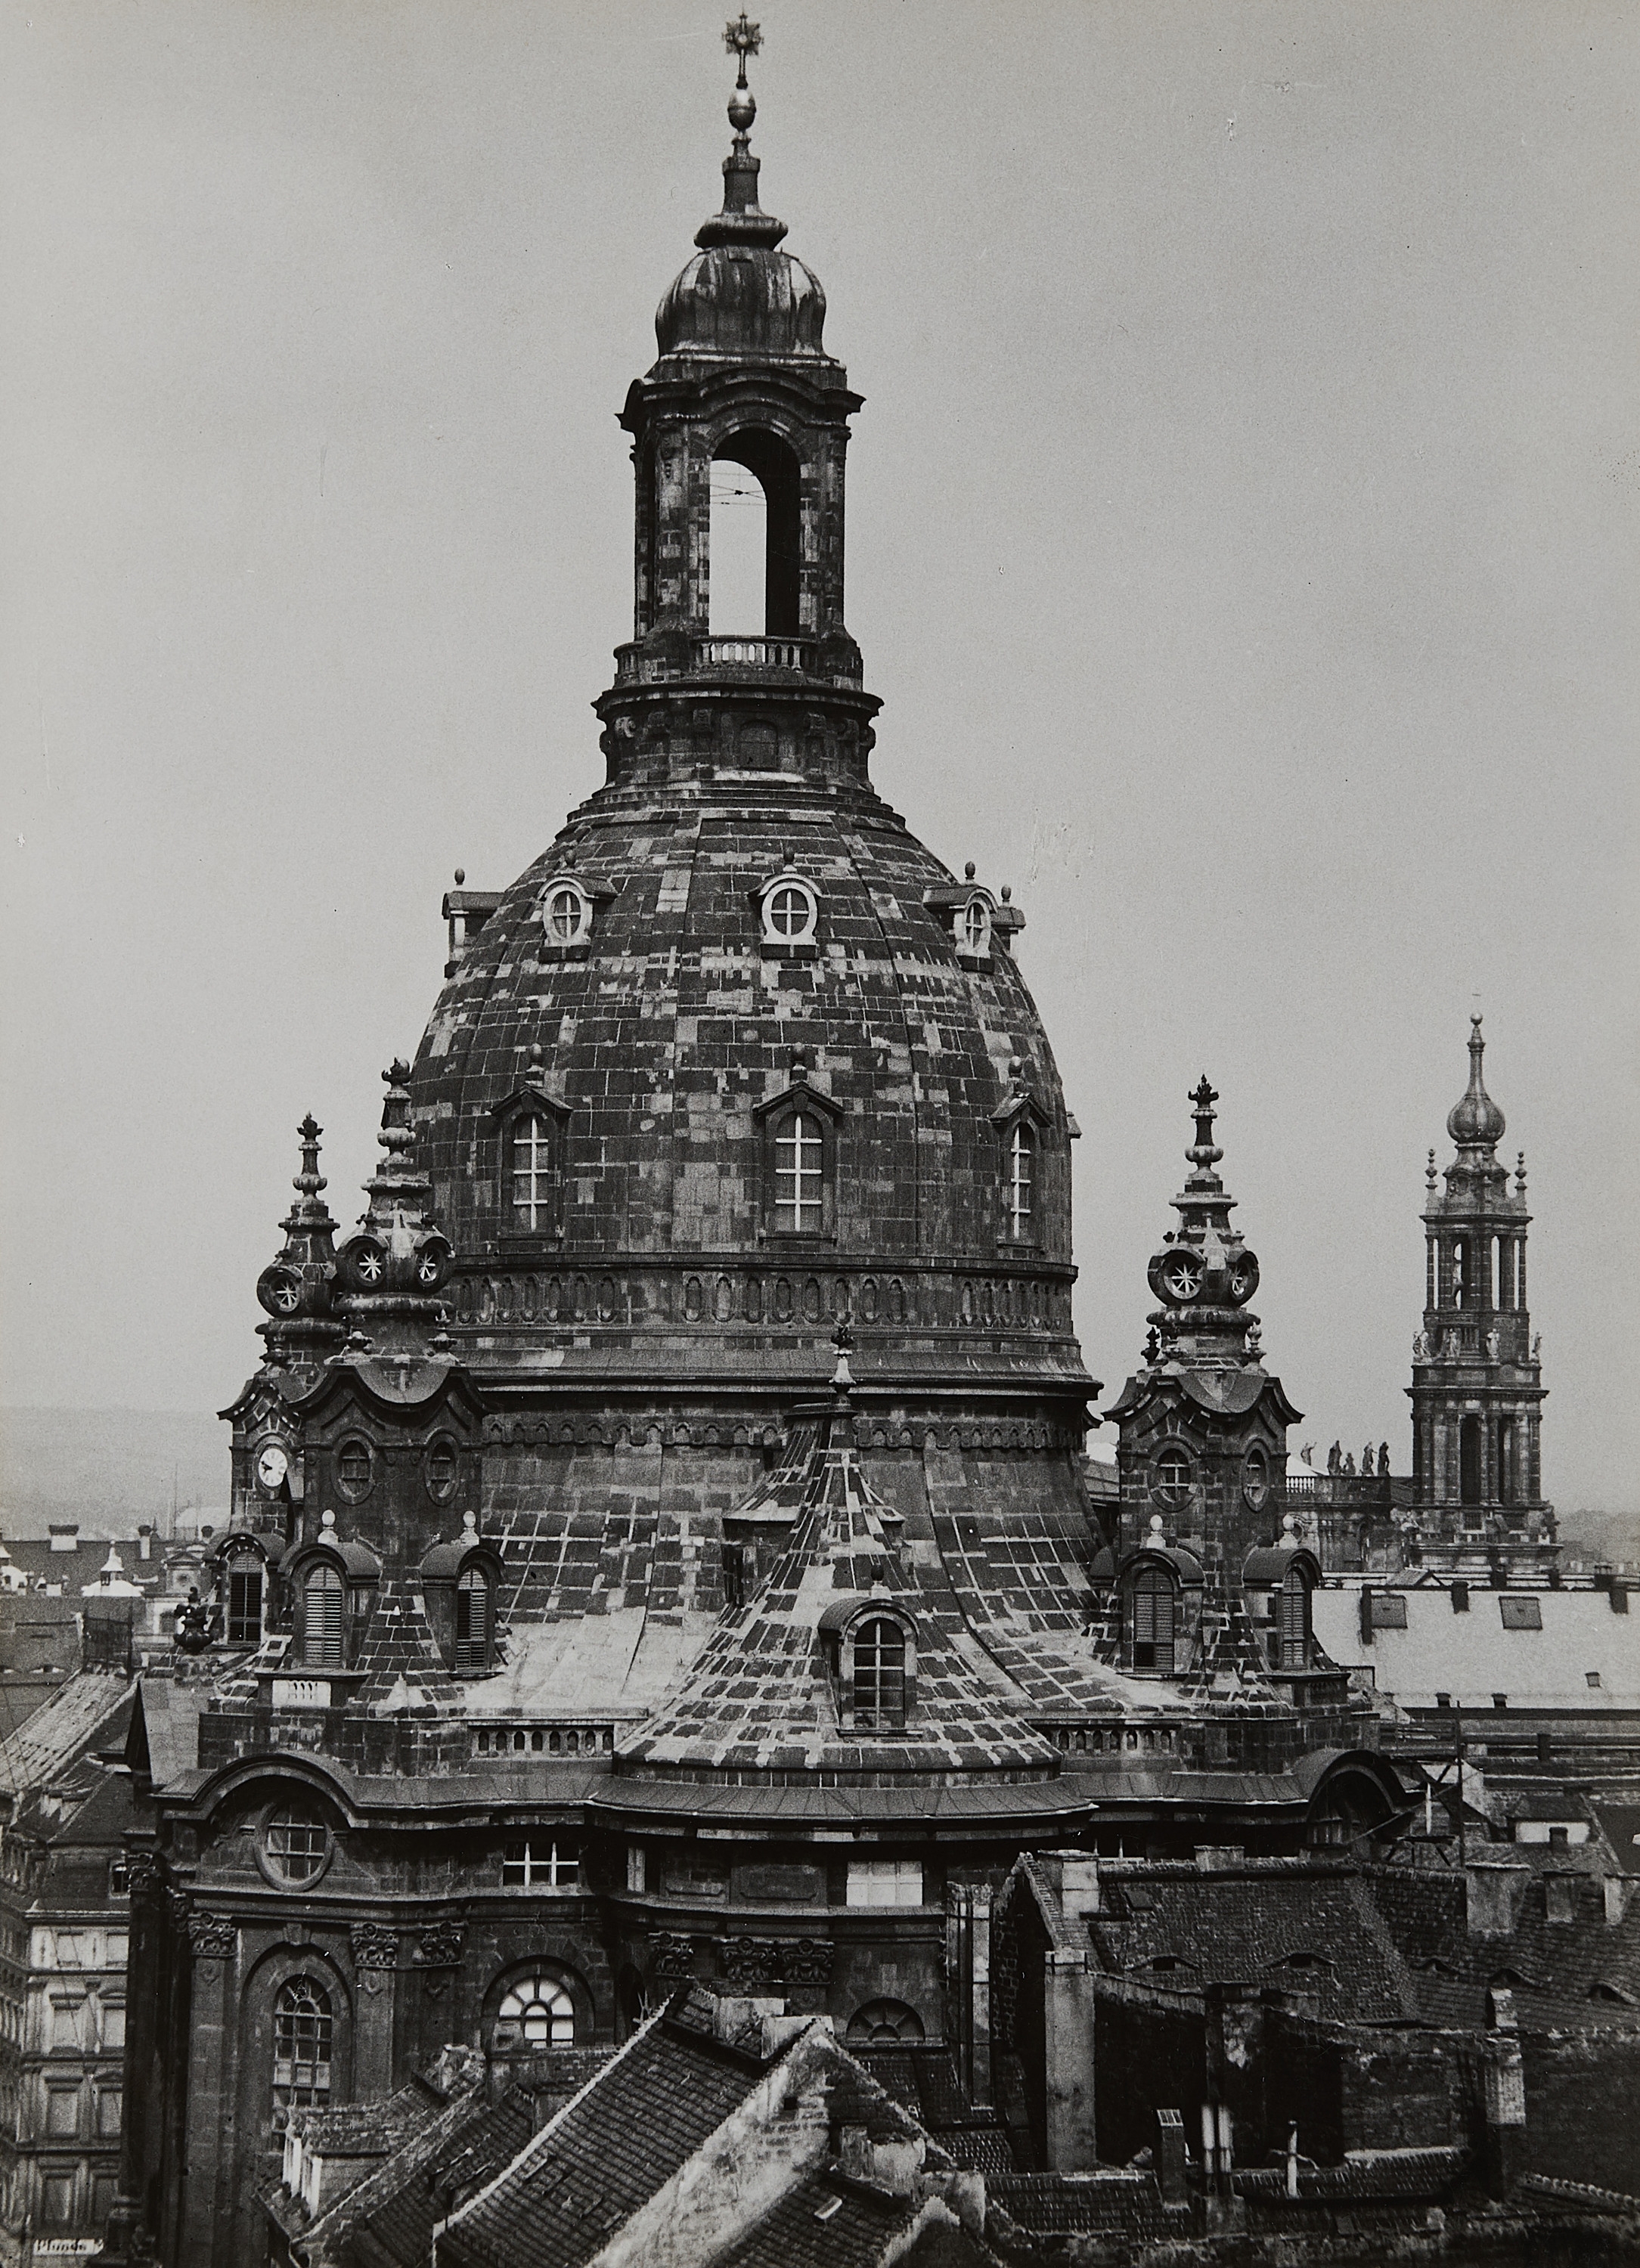 Dresden Frauenkirche, 1928. by Albert Renger-Patzsch, circa 1940/1943